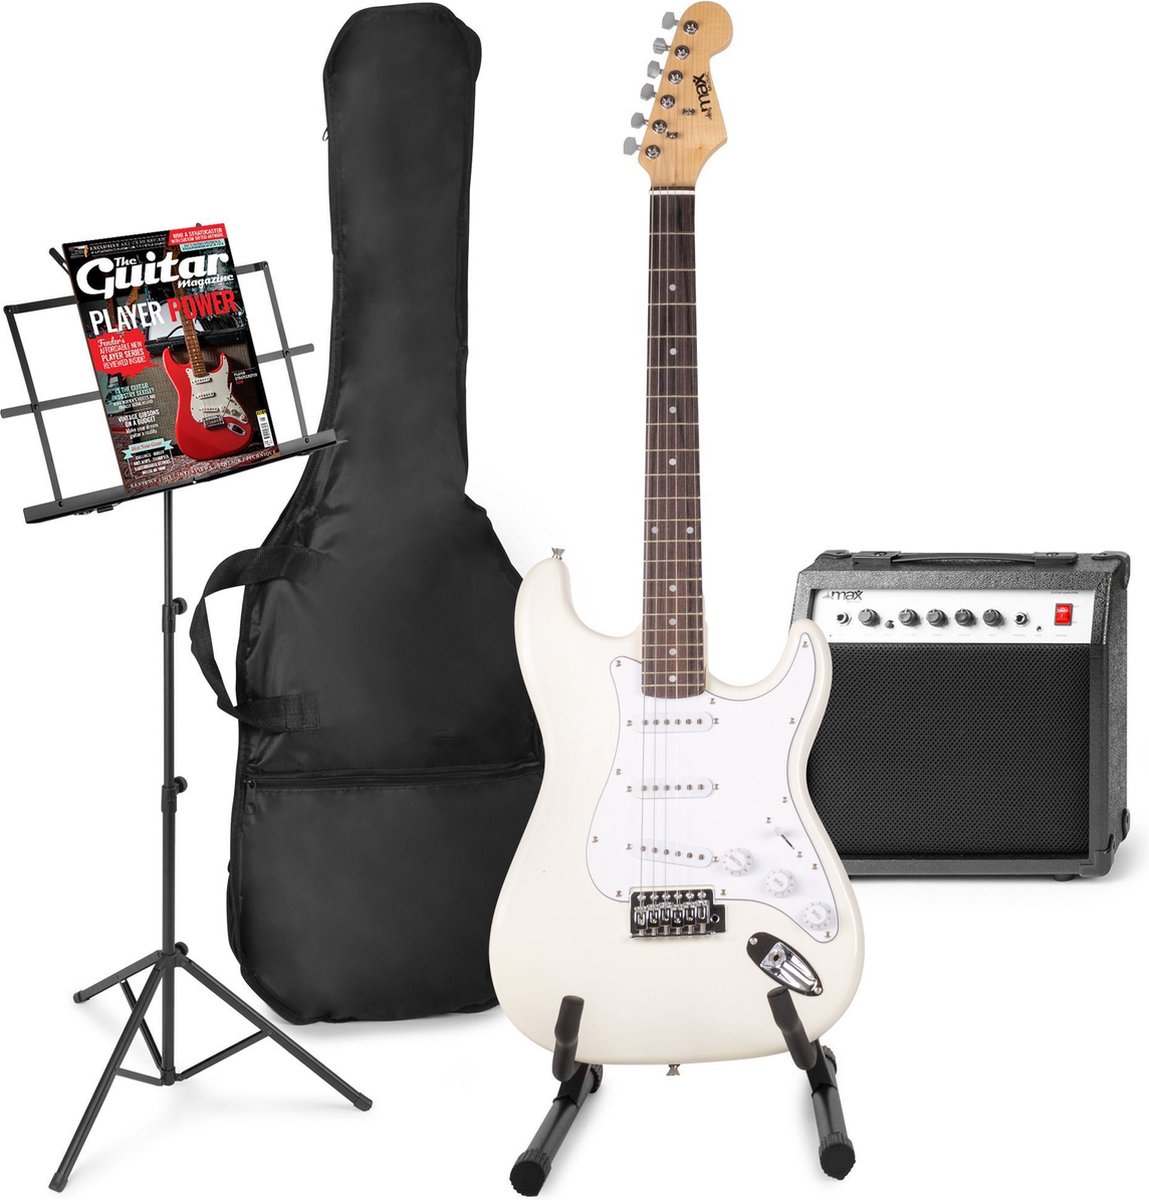 Elektrische gitaar met gitaar versterker - MAX Gigkit - Perfect voor beginners - incl. gitaar standaard, muziekstandaard, gitaar stemapparaat, gitaartas en plectrum - Wit